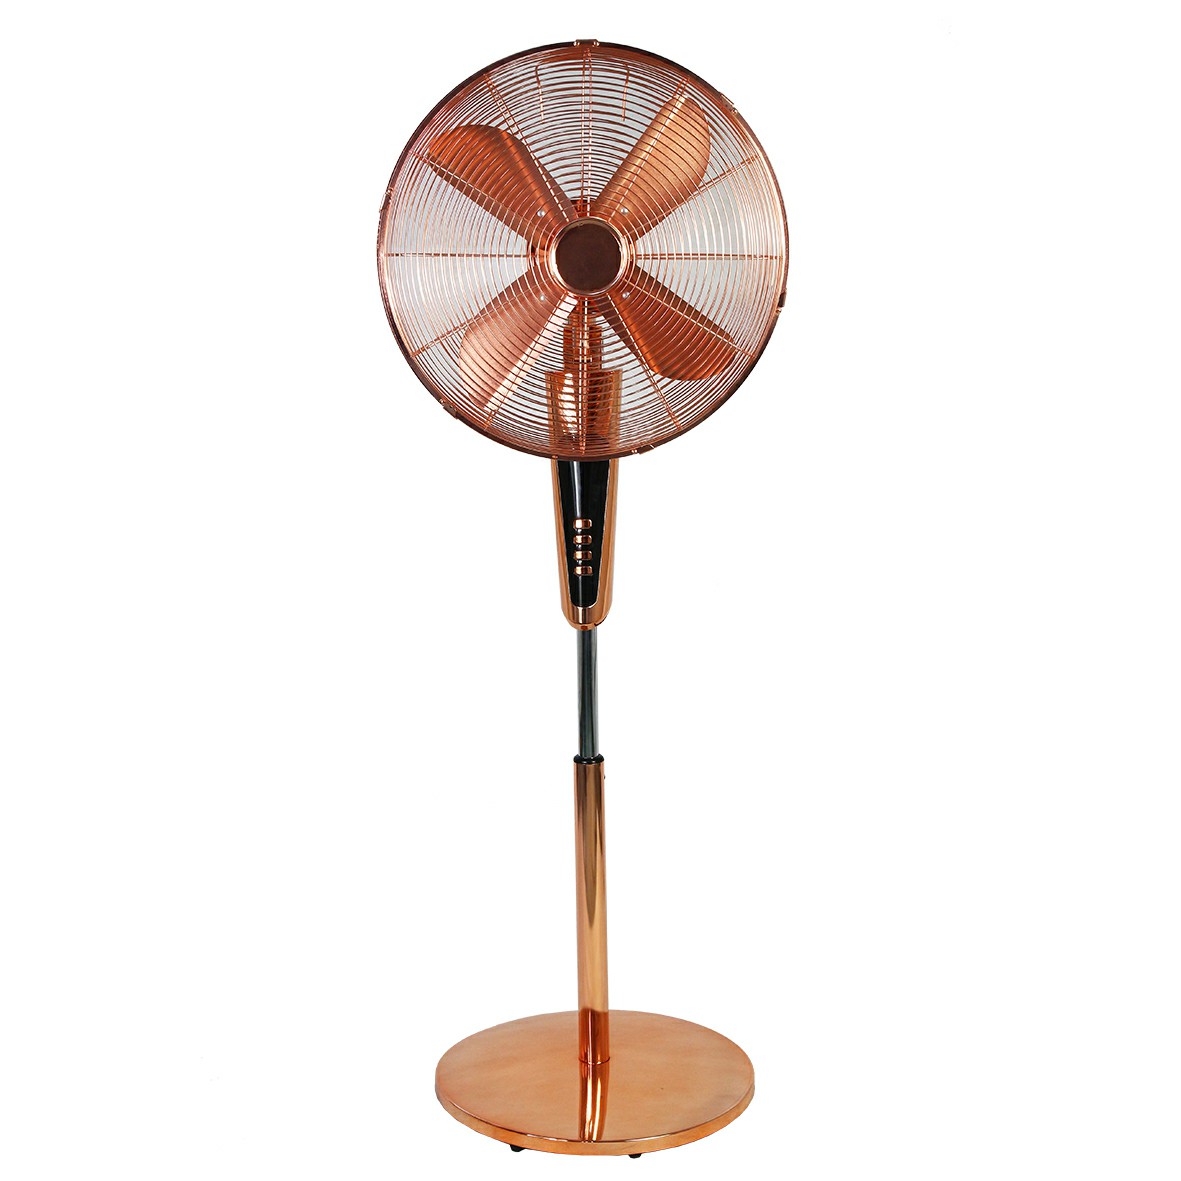 Plastic antique fan